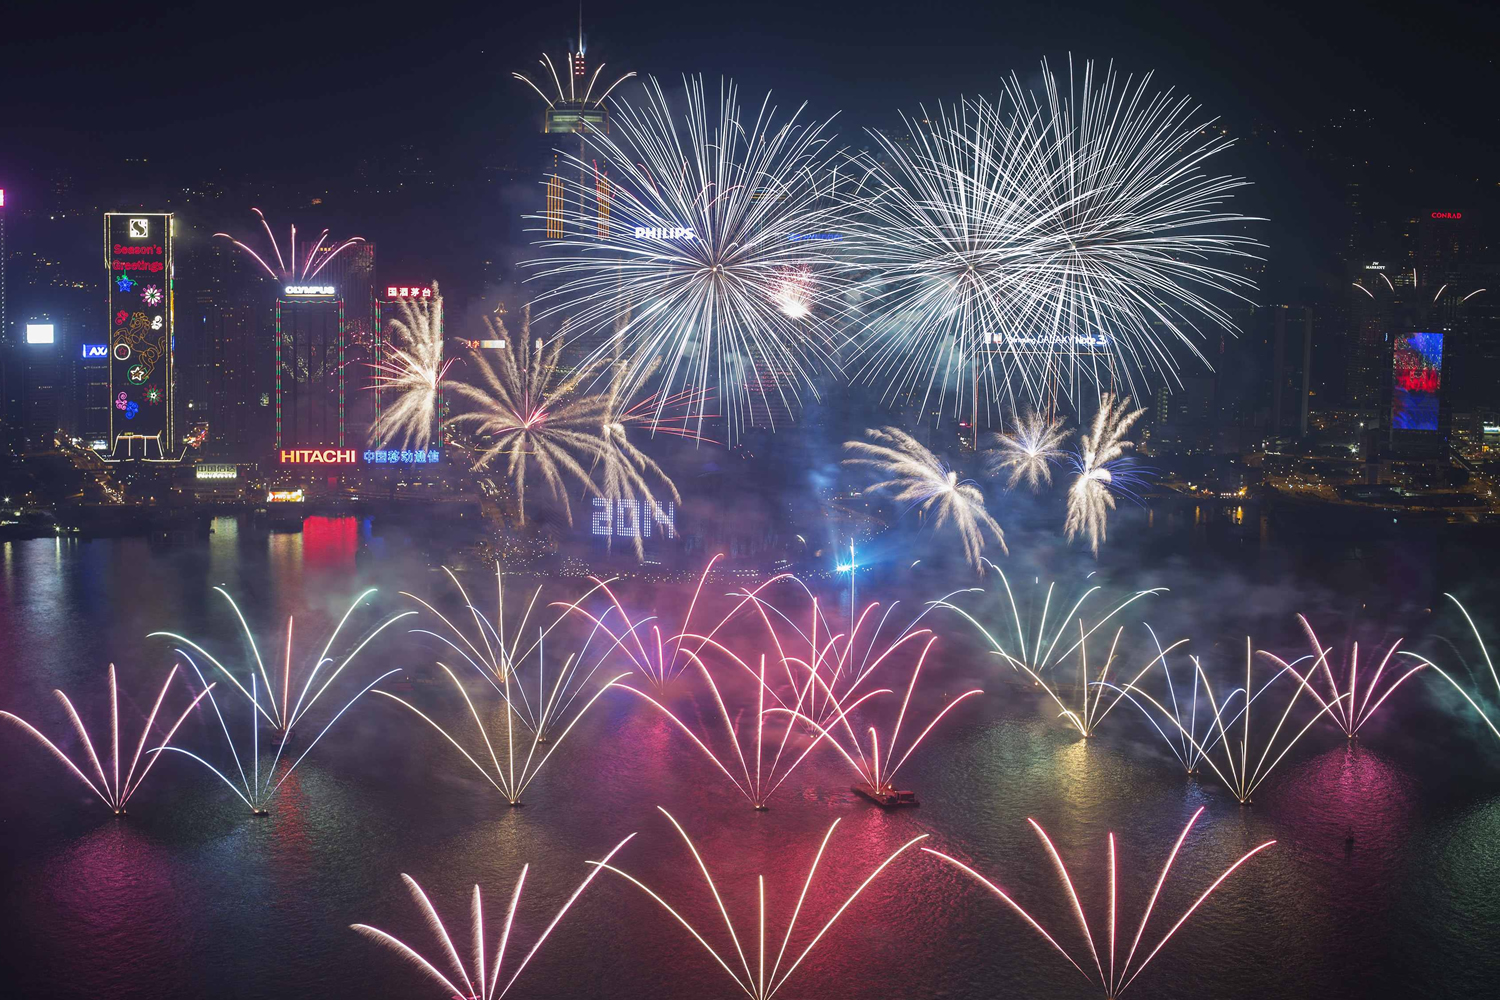 Espectacular sesión de fuegos artificiales para dar la bienvenida al 2014 en Hong Kong